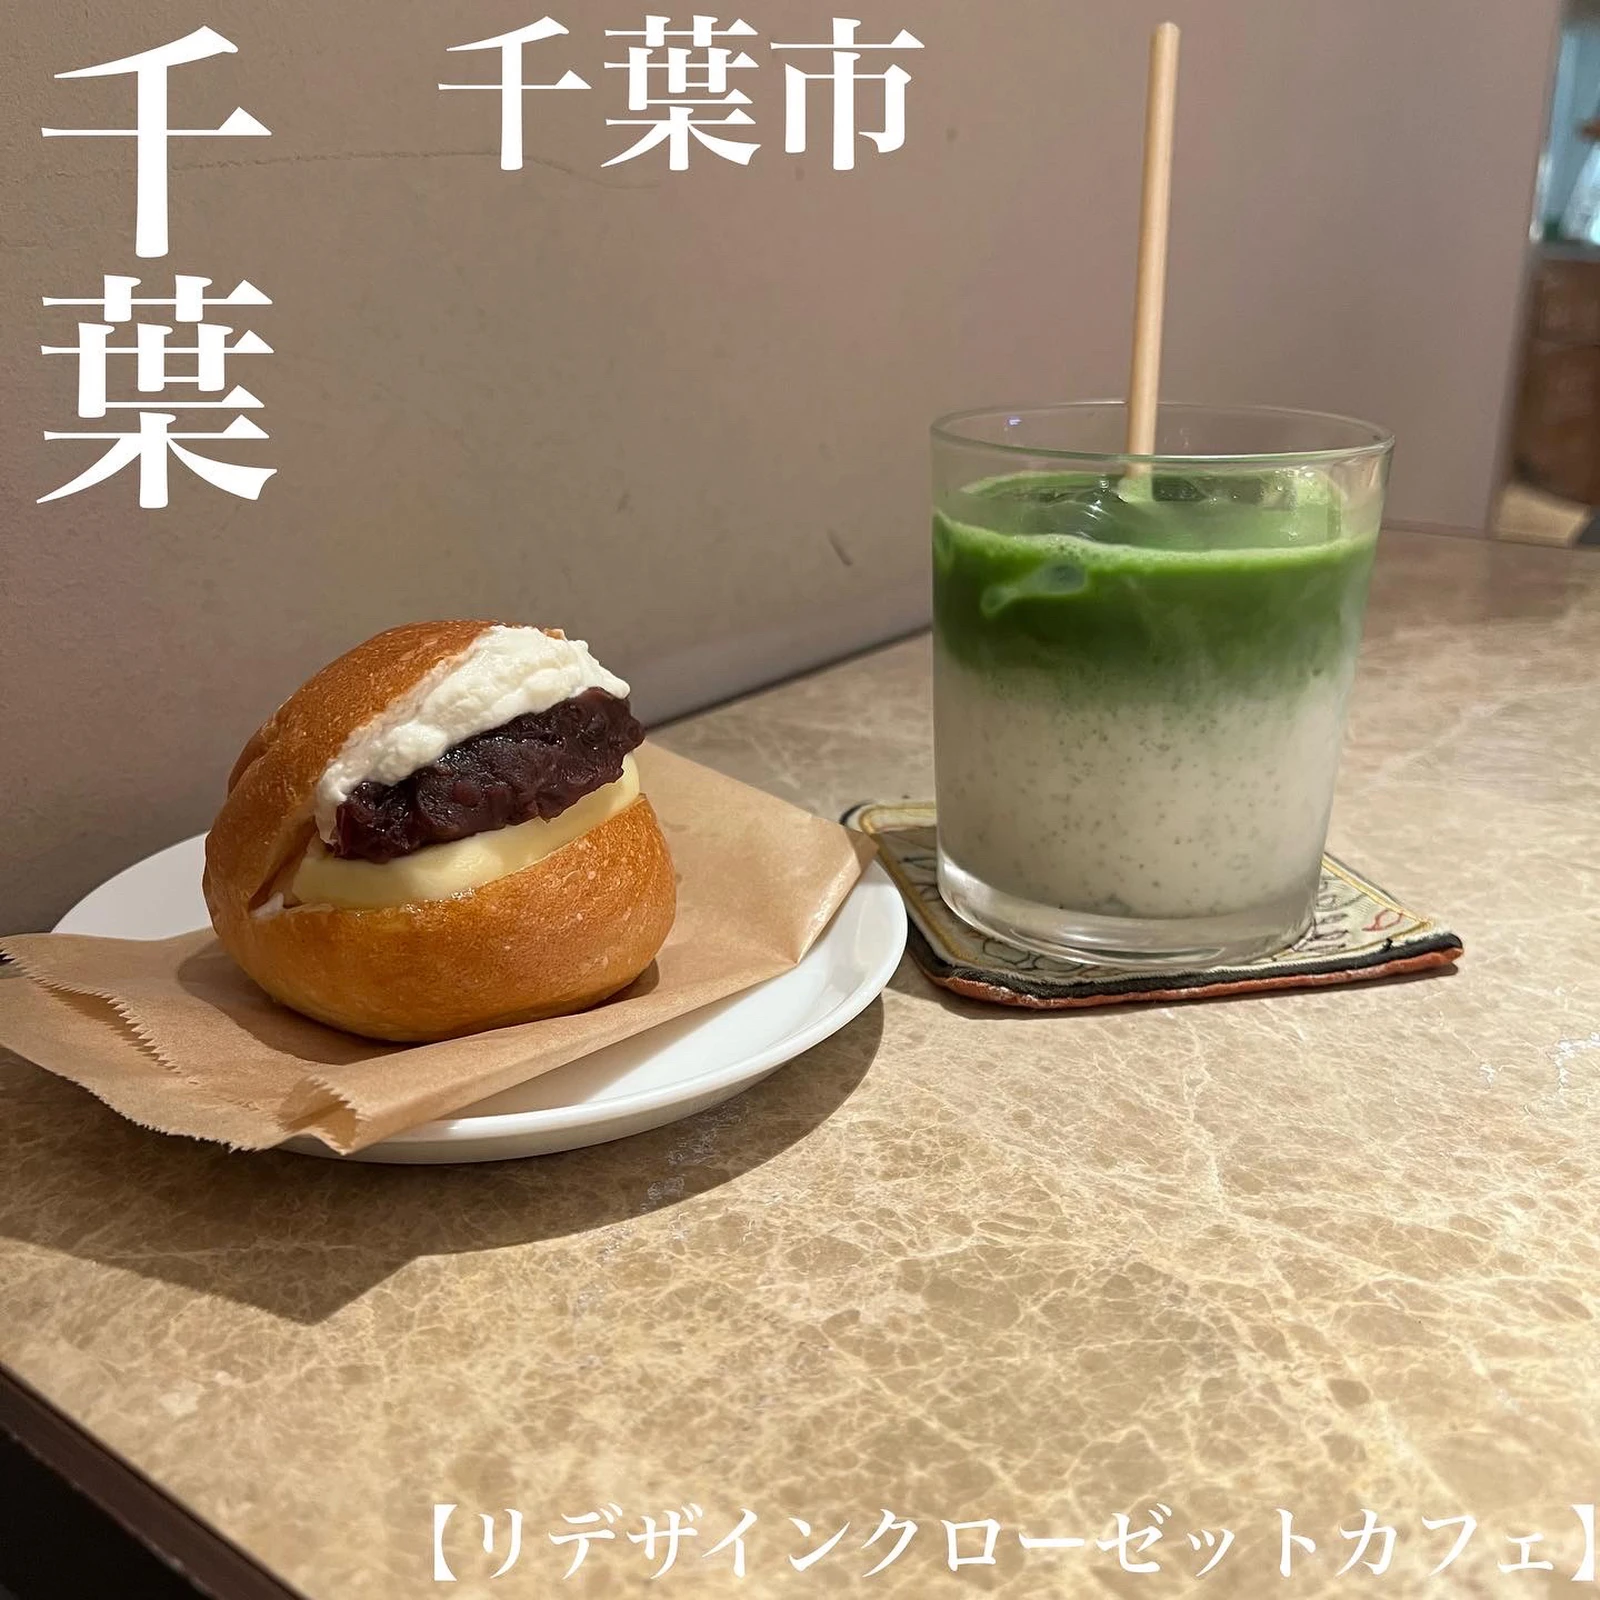 千葉 千葉市 千葉そごうのジュンヌ館におしゃれカフェ 雰囲気が良すぎる ゆまグルメ 千葉カフェグルメ が投稿したフォトブック Lemon8